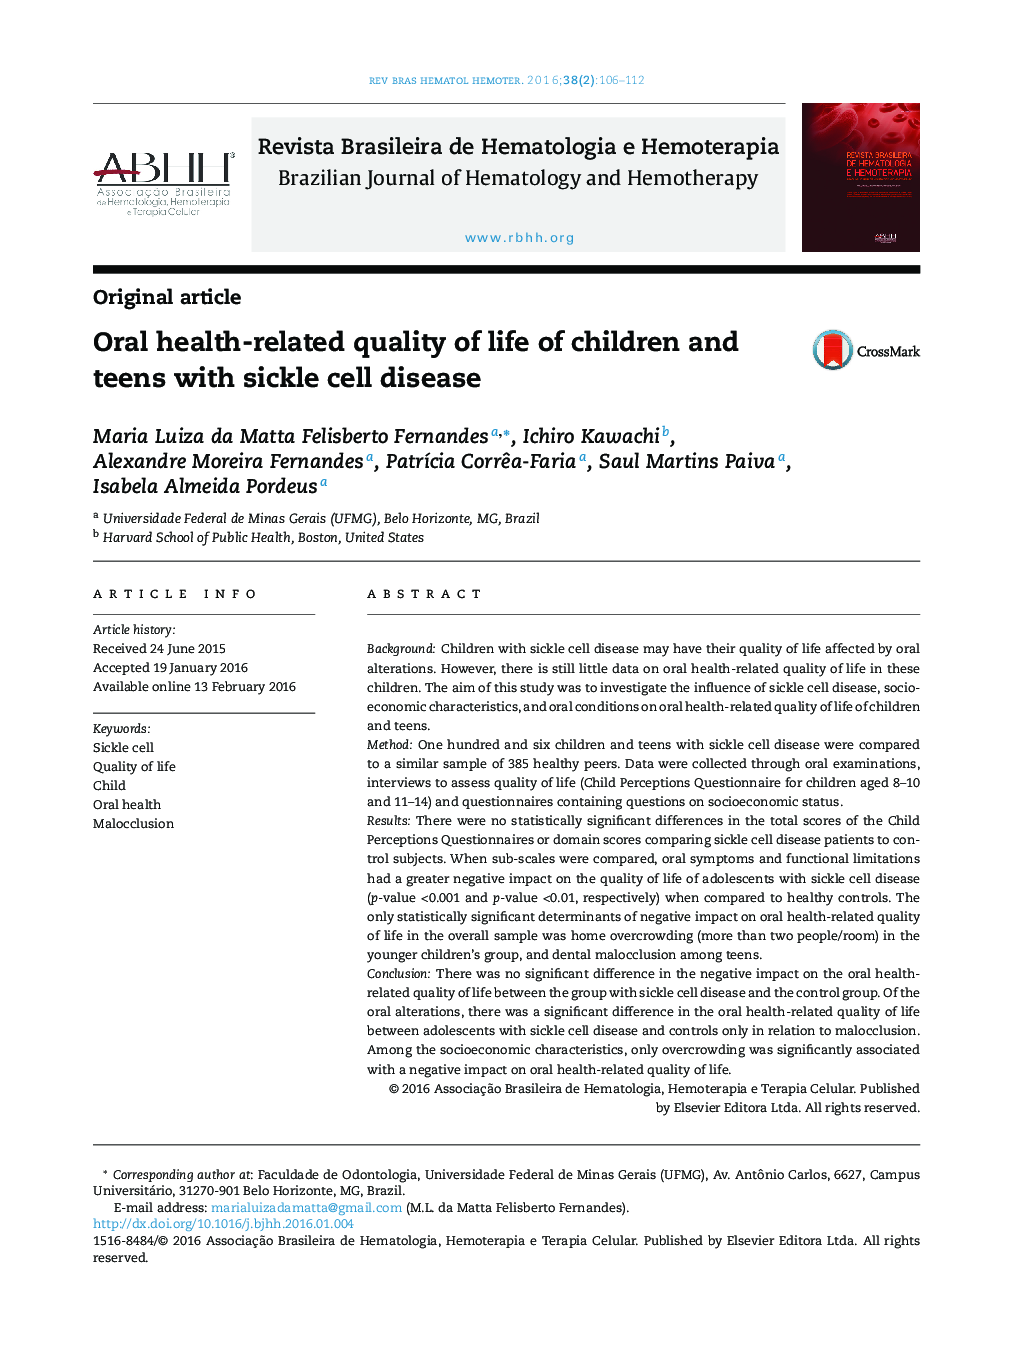 کیفیت زندگی مرتبط با سلامت دهان و دندان کودکان و نوجوانان مبتلا به بیماری سلول داسی شکل 